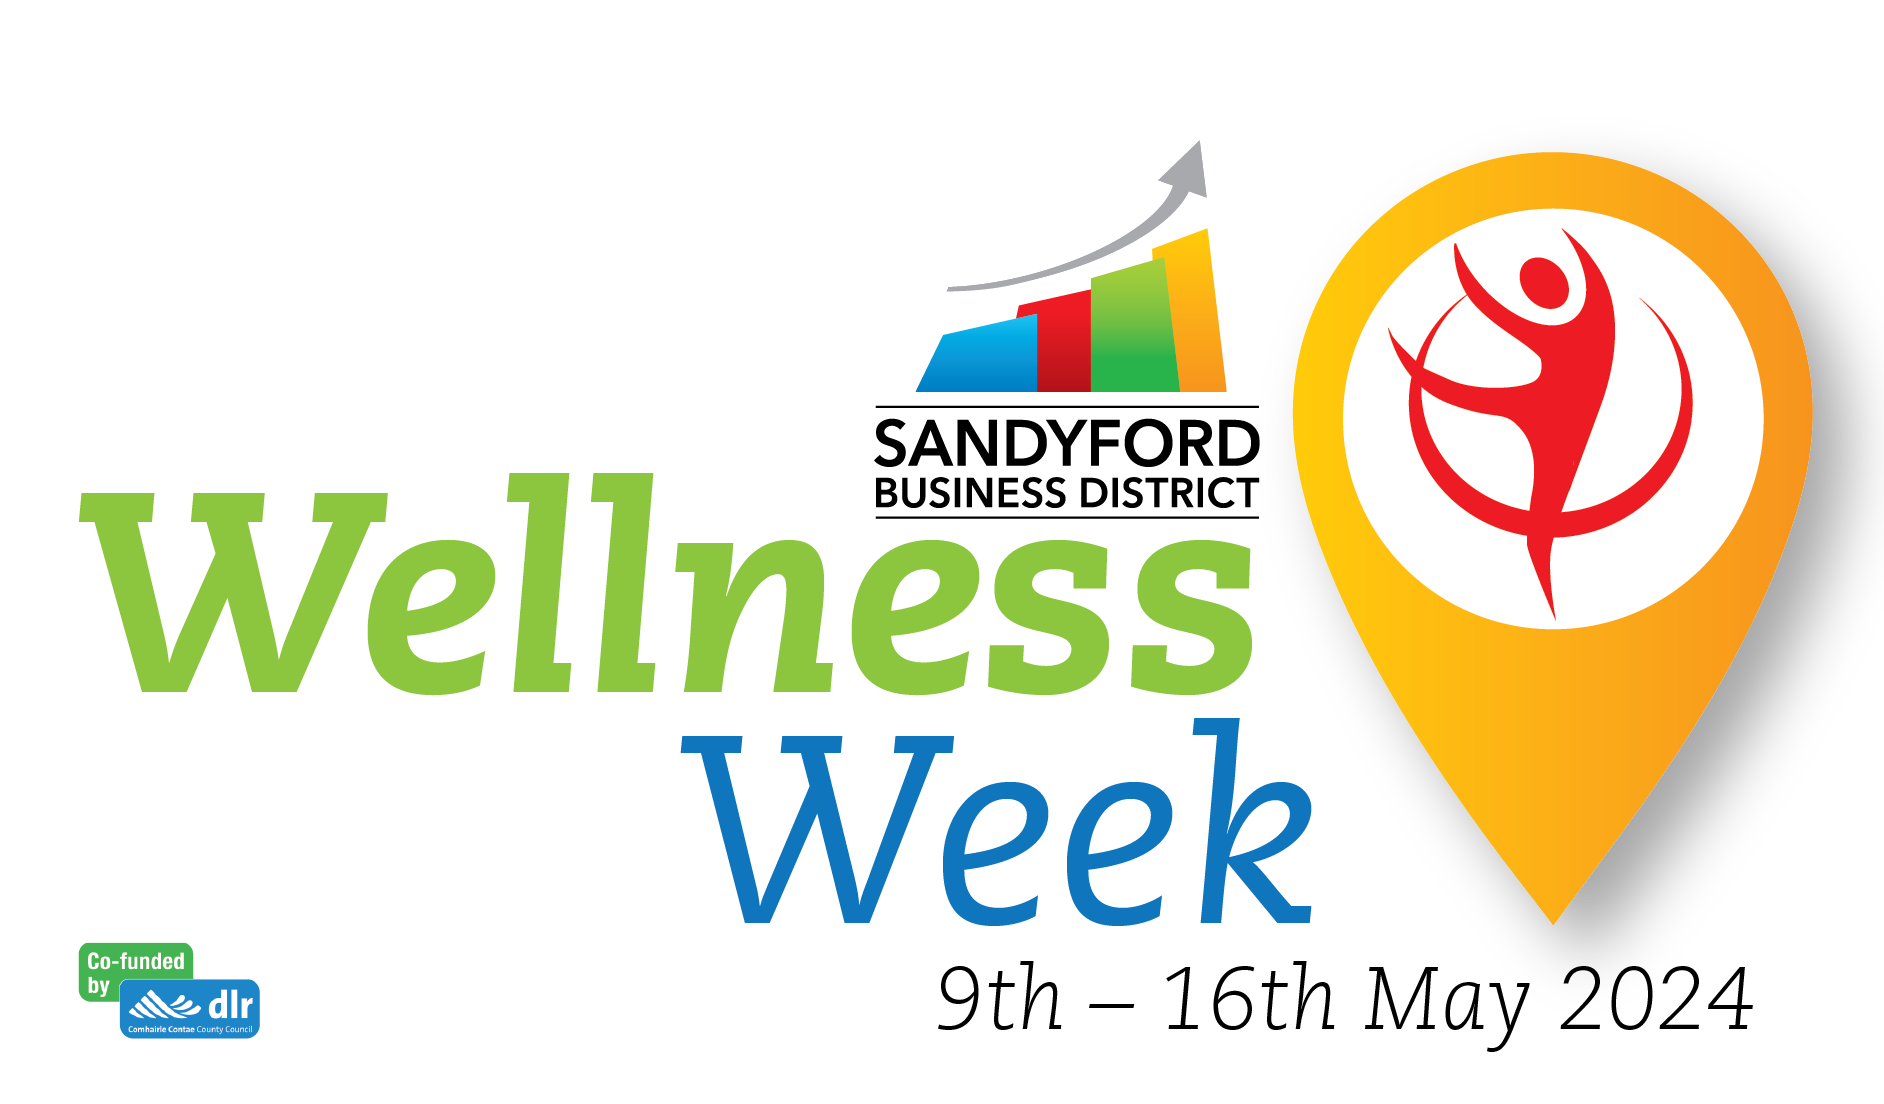 Sandyford Business District Wellness Week ‘24